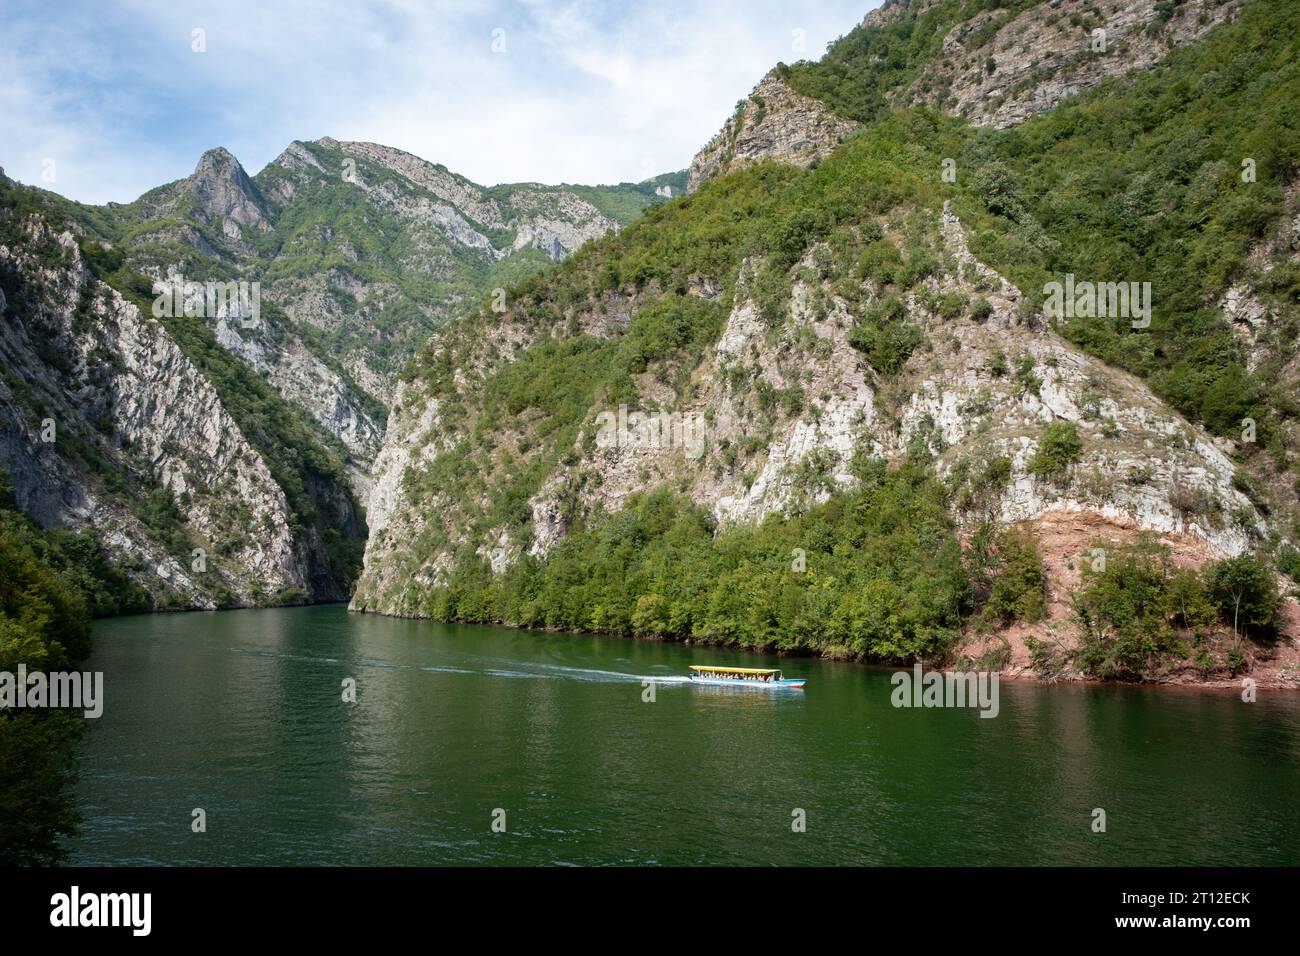 Un bateau touristique sur l'eau au lac Komani, Albanie Banque D'Images